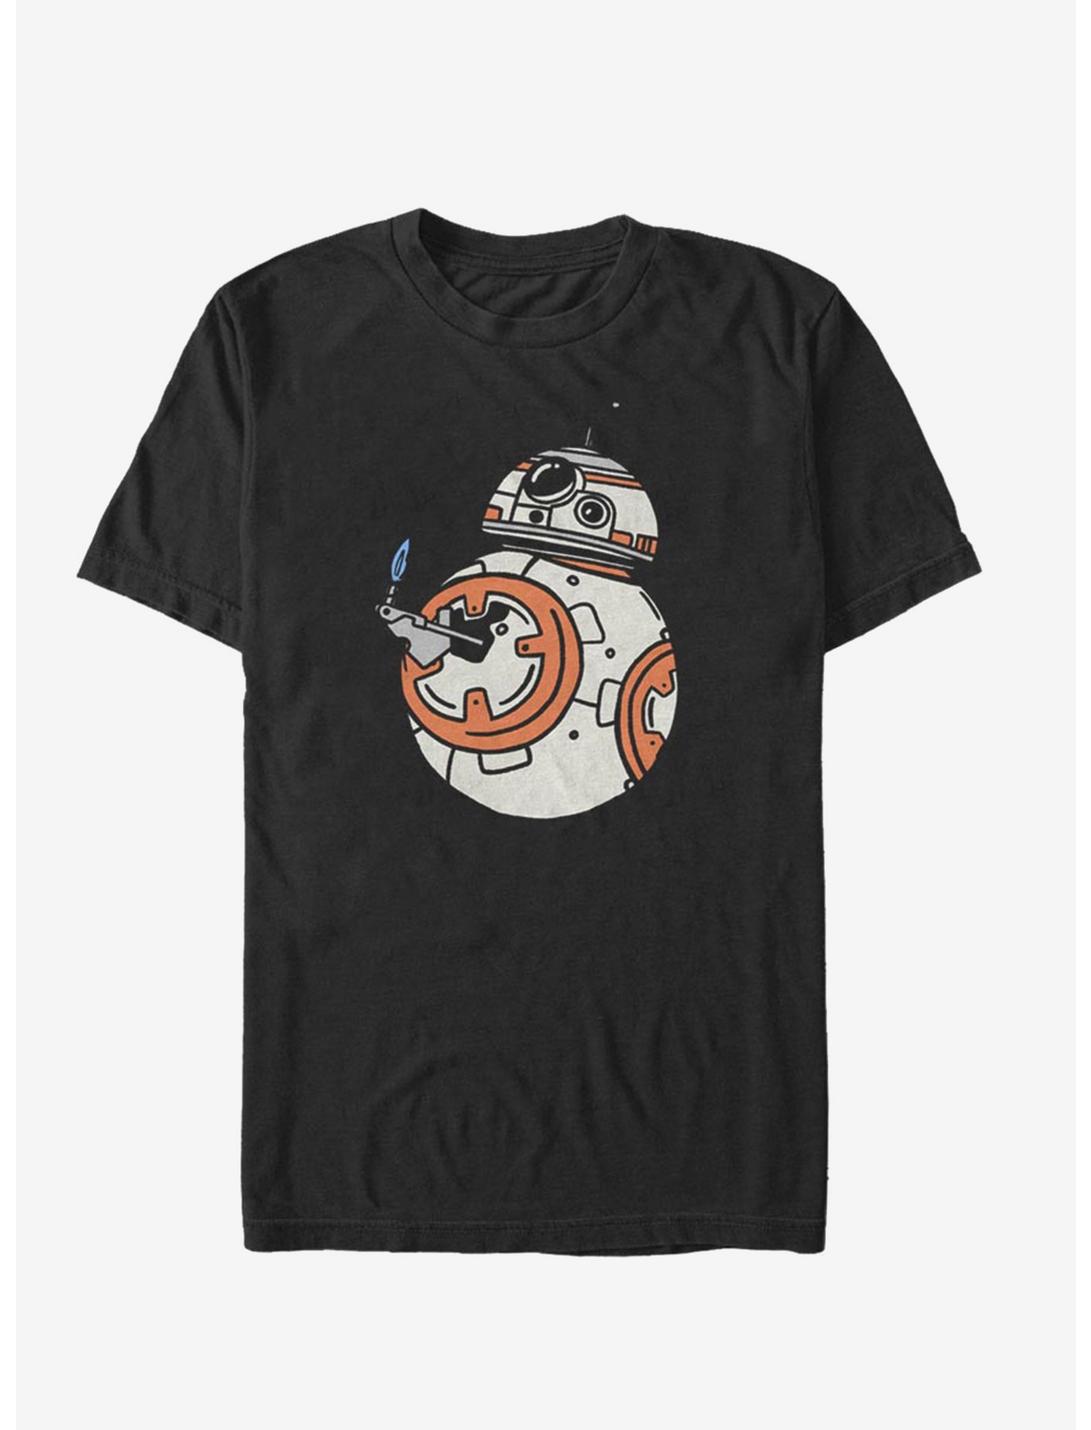 Star Wars Episode IX The Rise Of Skywalker BB-8 Doodles T-Shirt, BLACK, hi-res